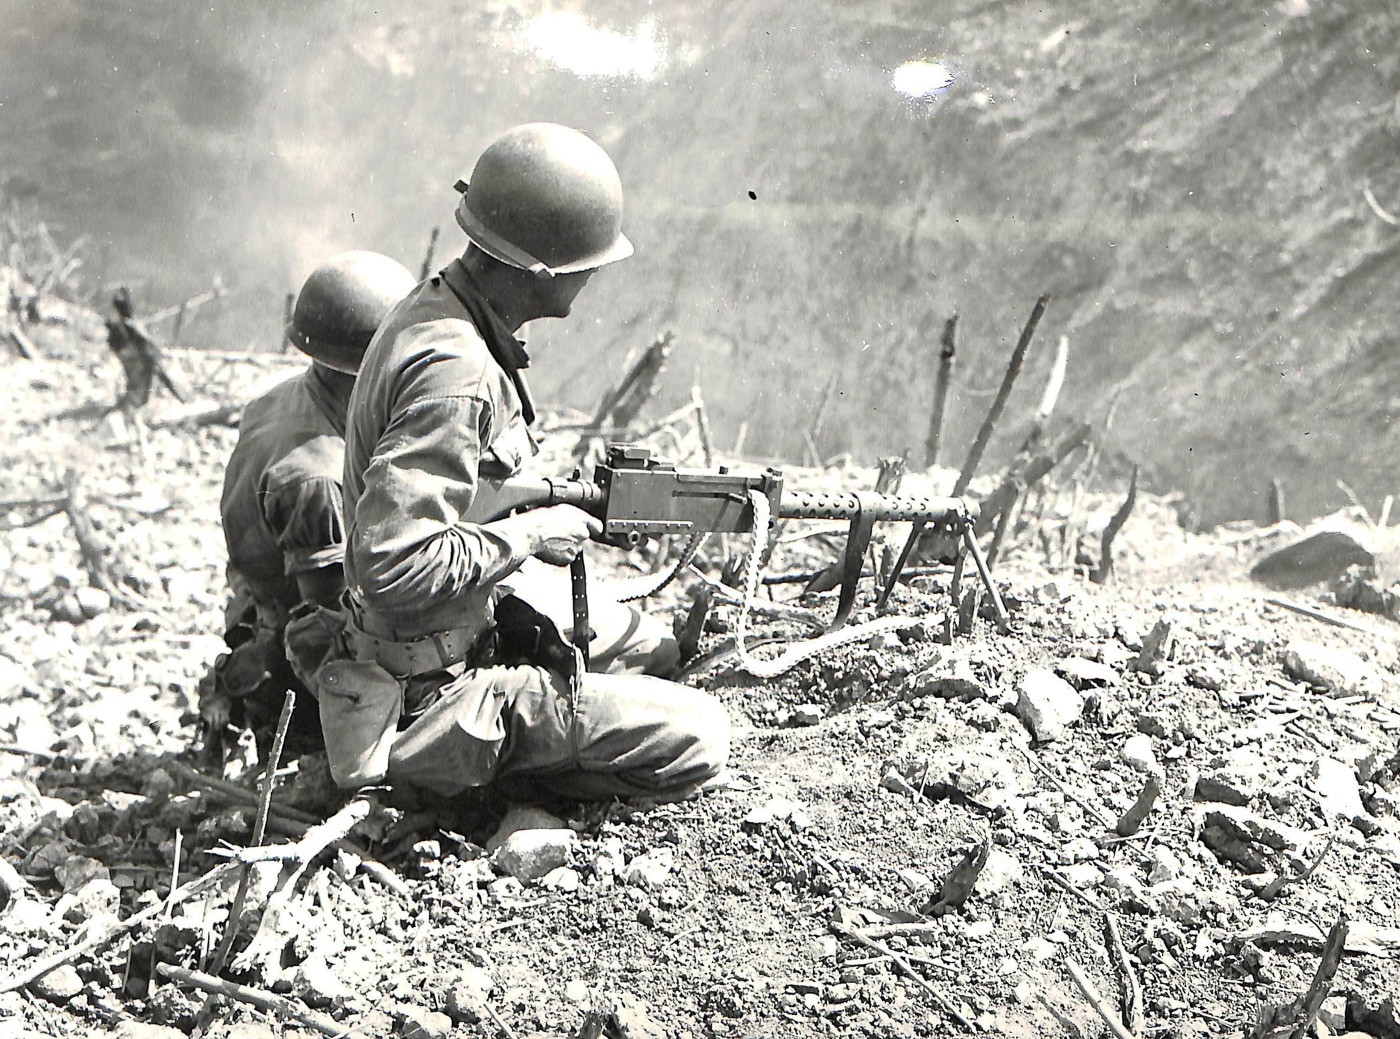 m1919a6 machine gun in action in philippines near manila